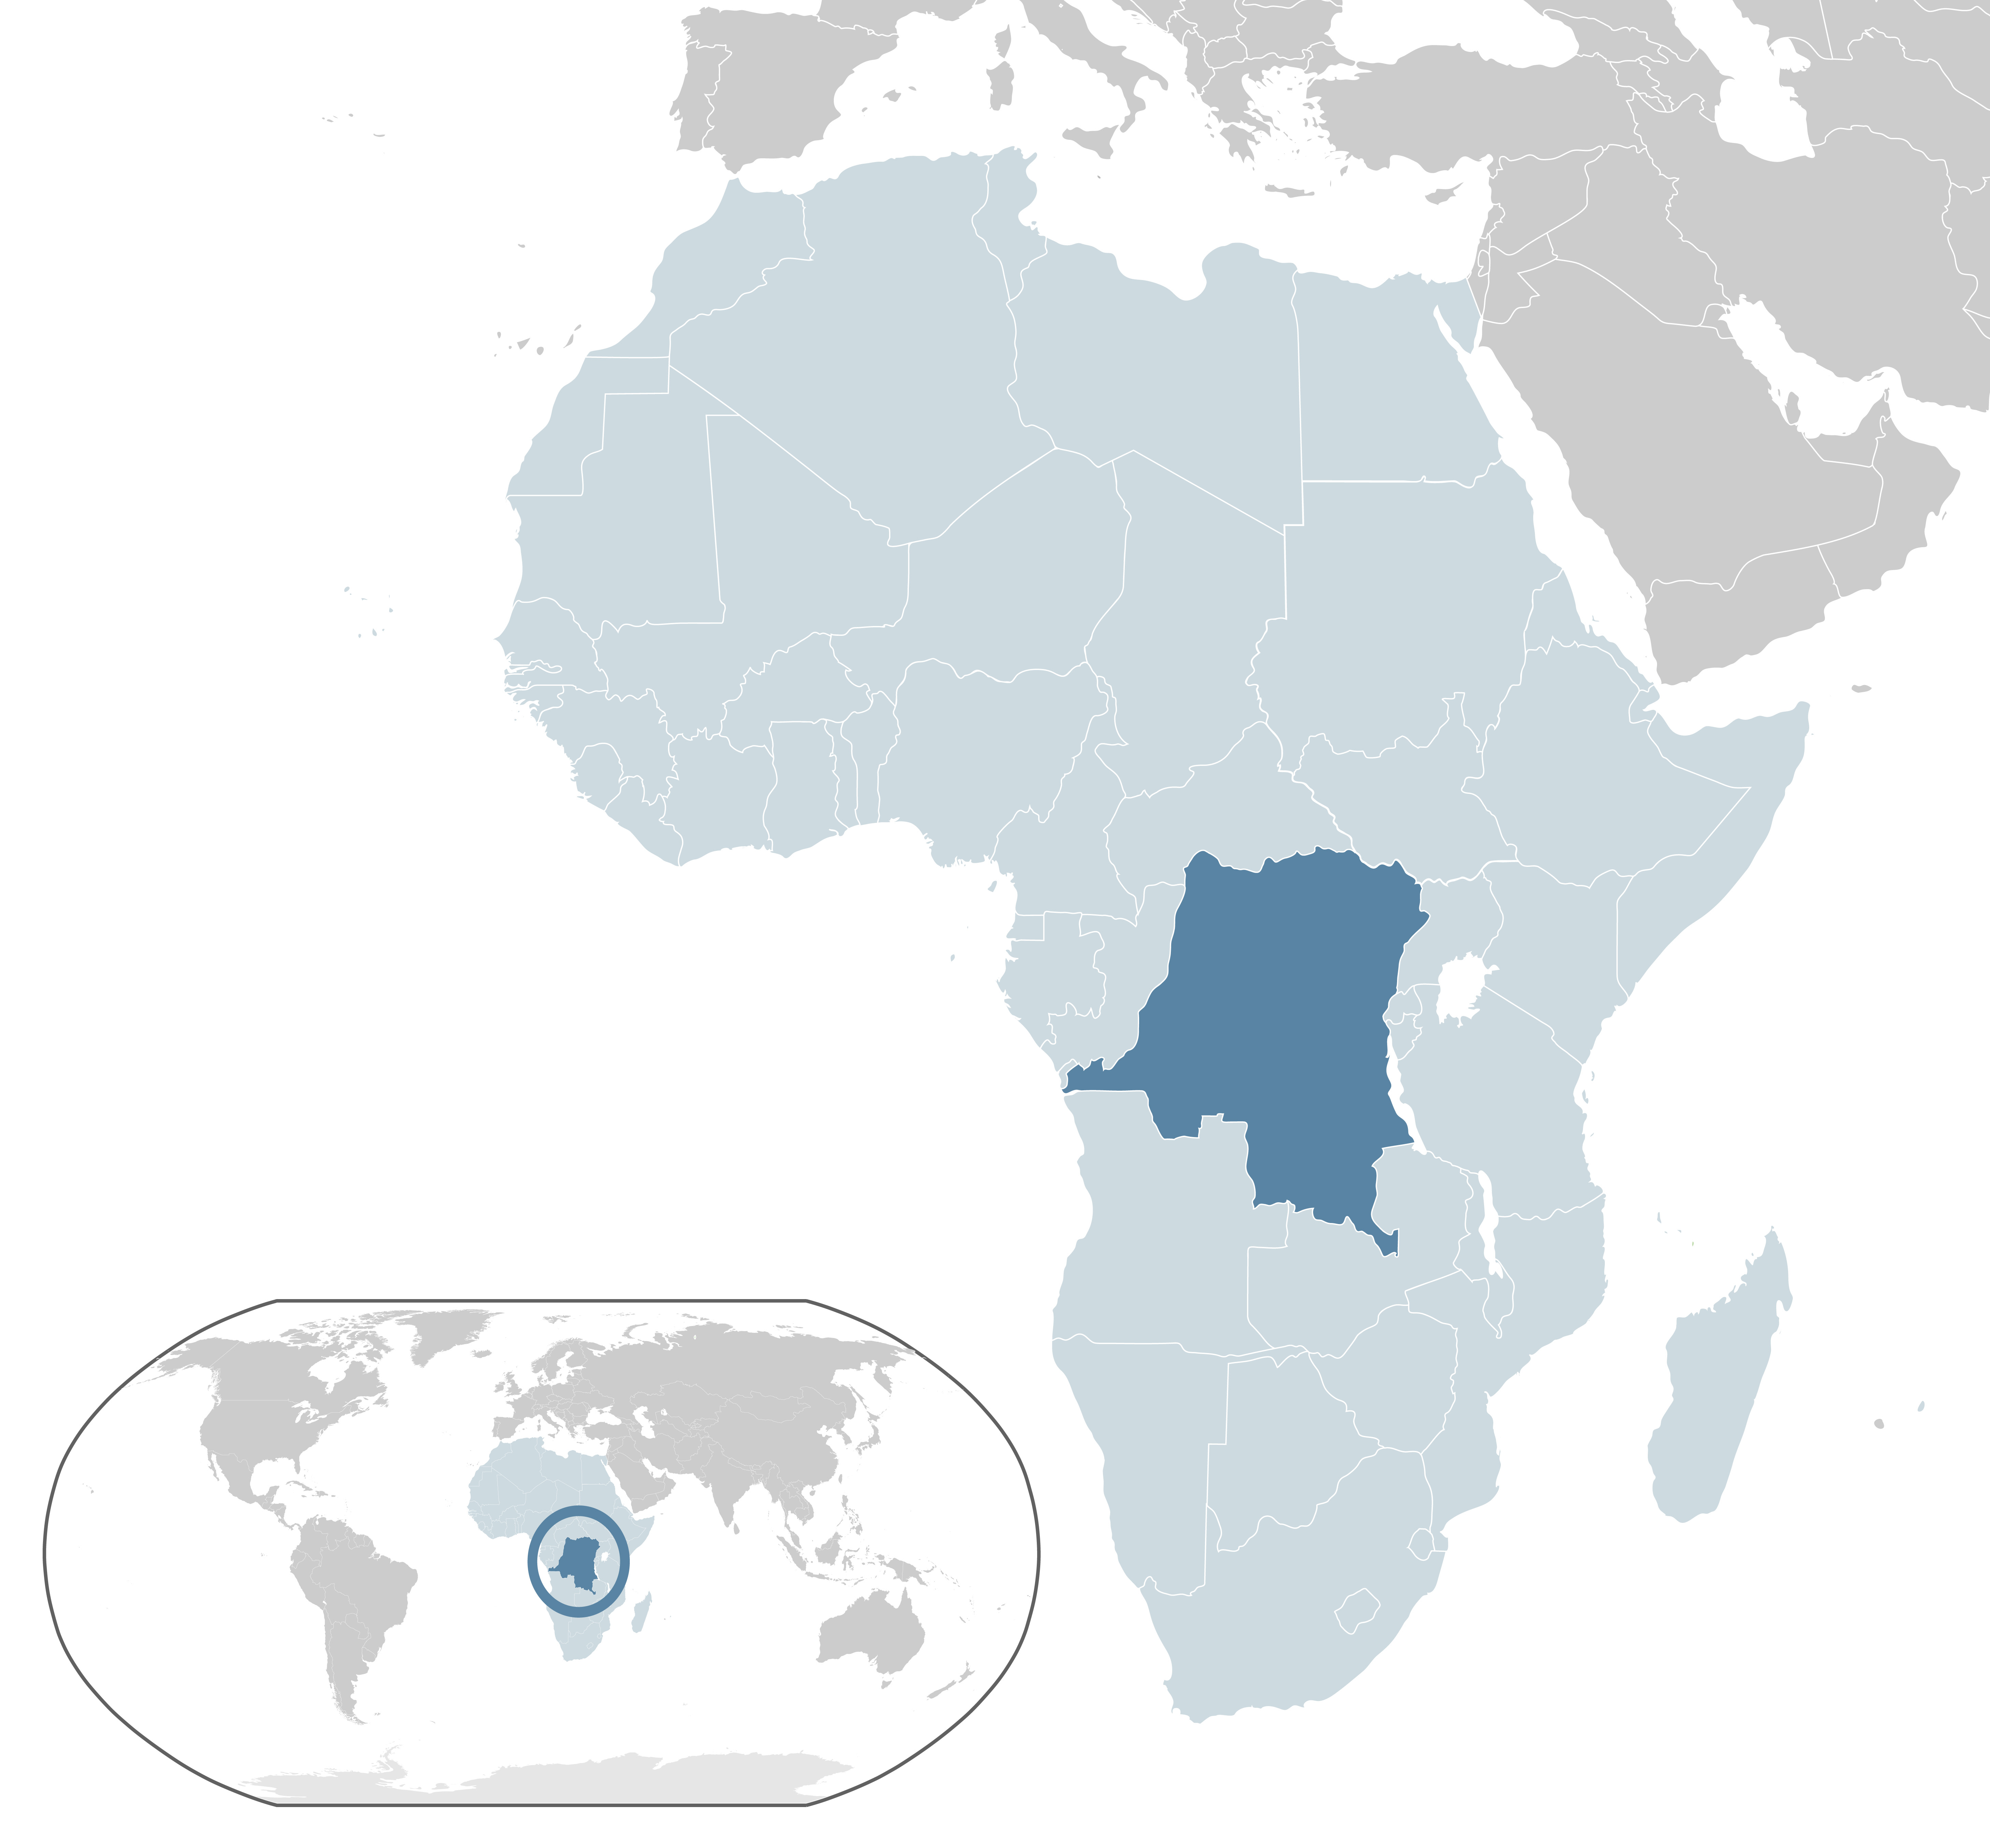 Location_DR_Congo_AU_Africa cc-by-nc.jpg